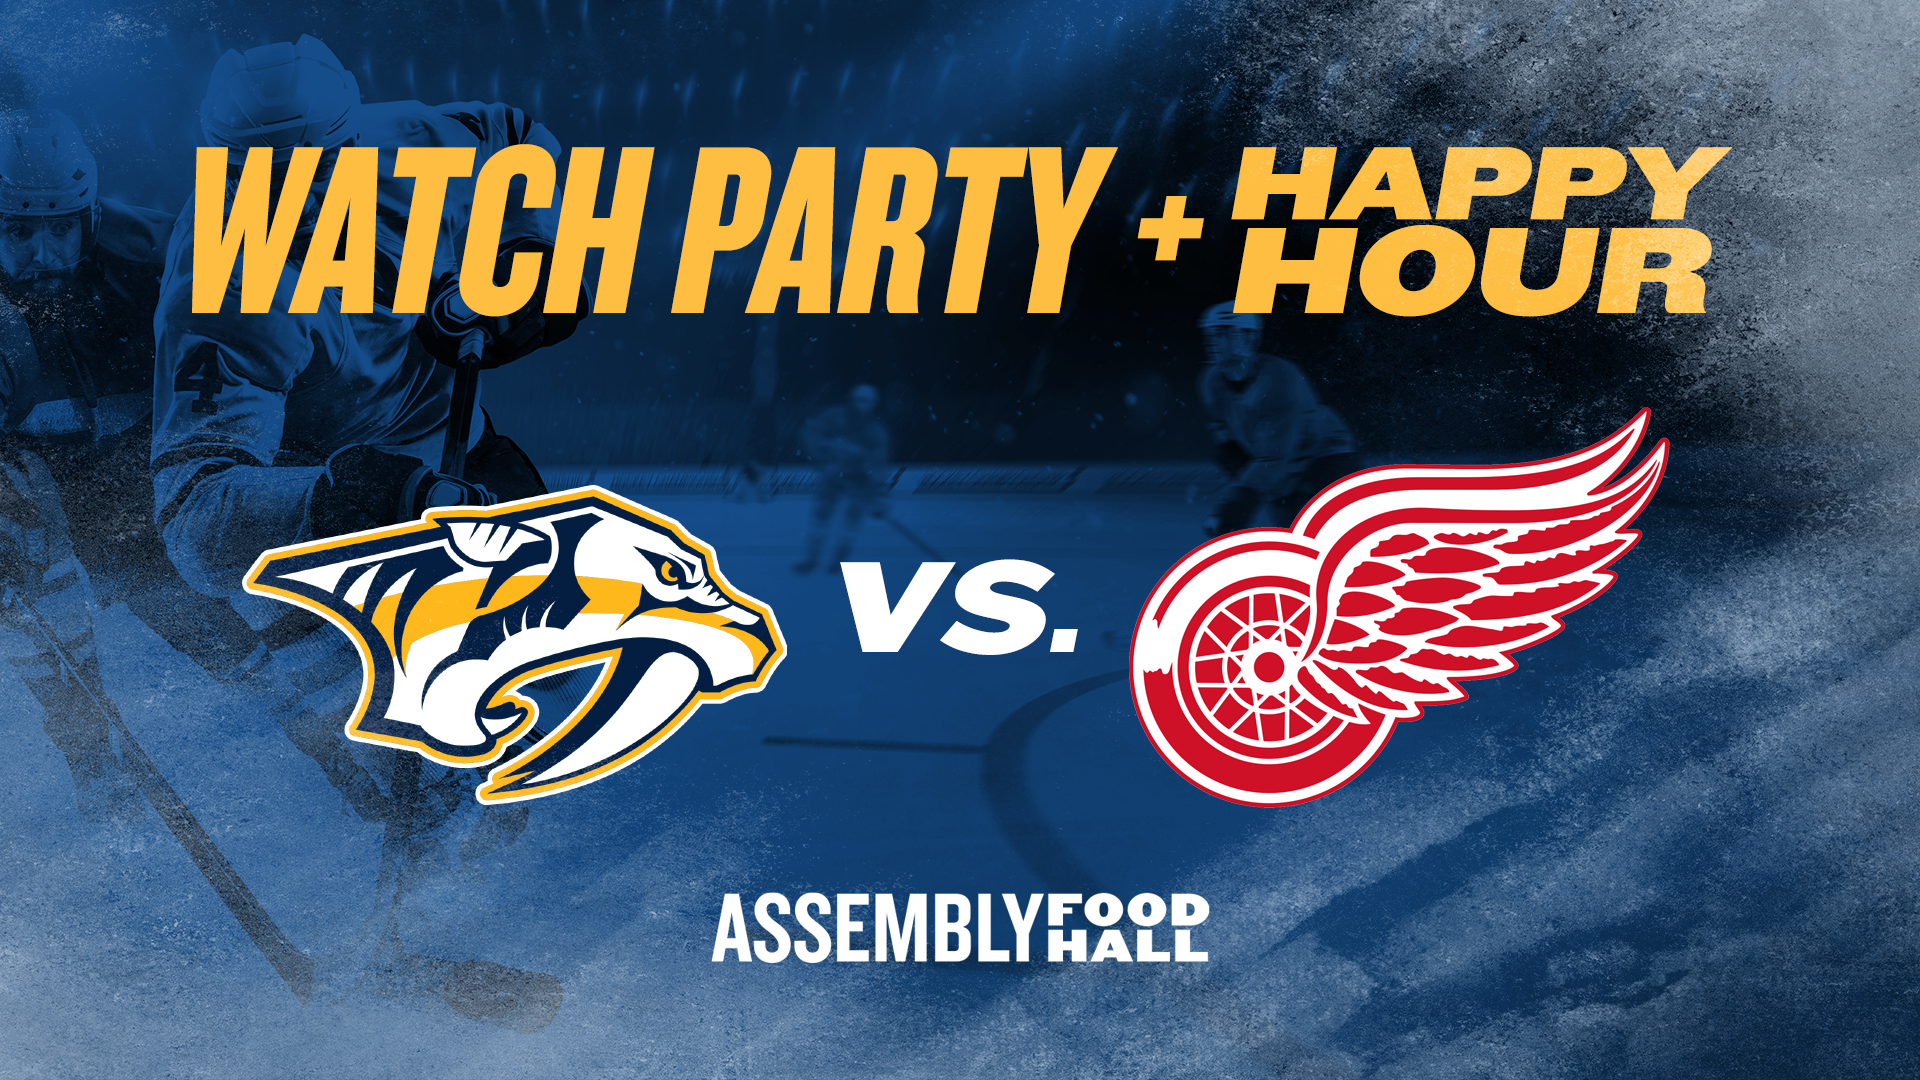 Predators vs. Detroit Red Wings | Watch Party & Happy Hour - hero